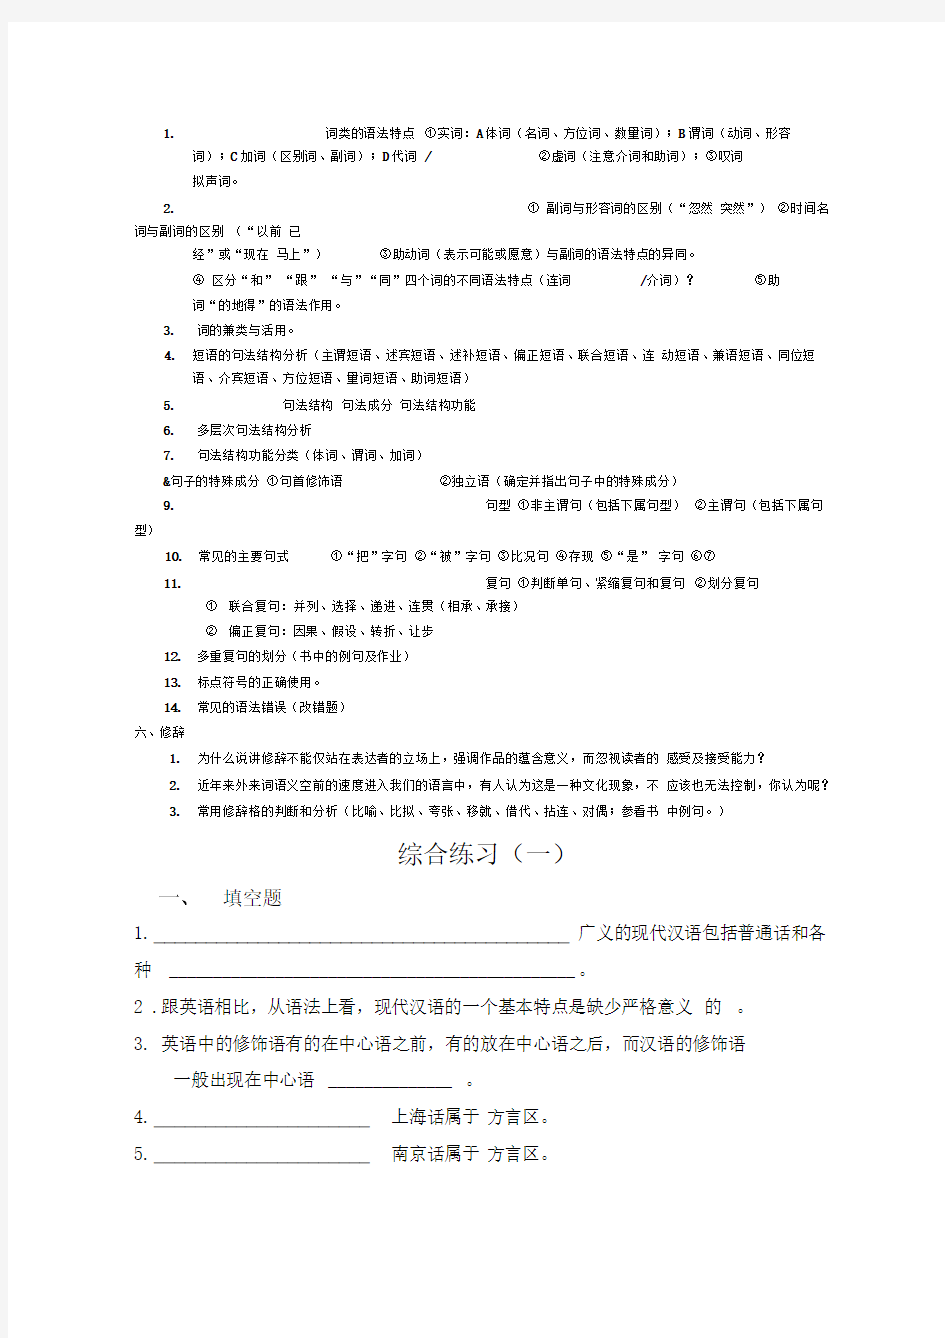 现代汉语复习资料整理---史上最全版本